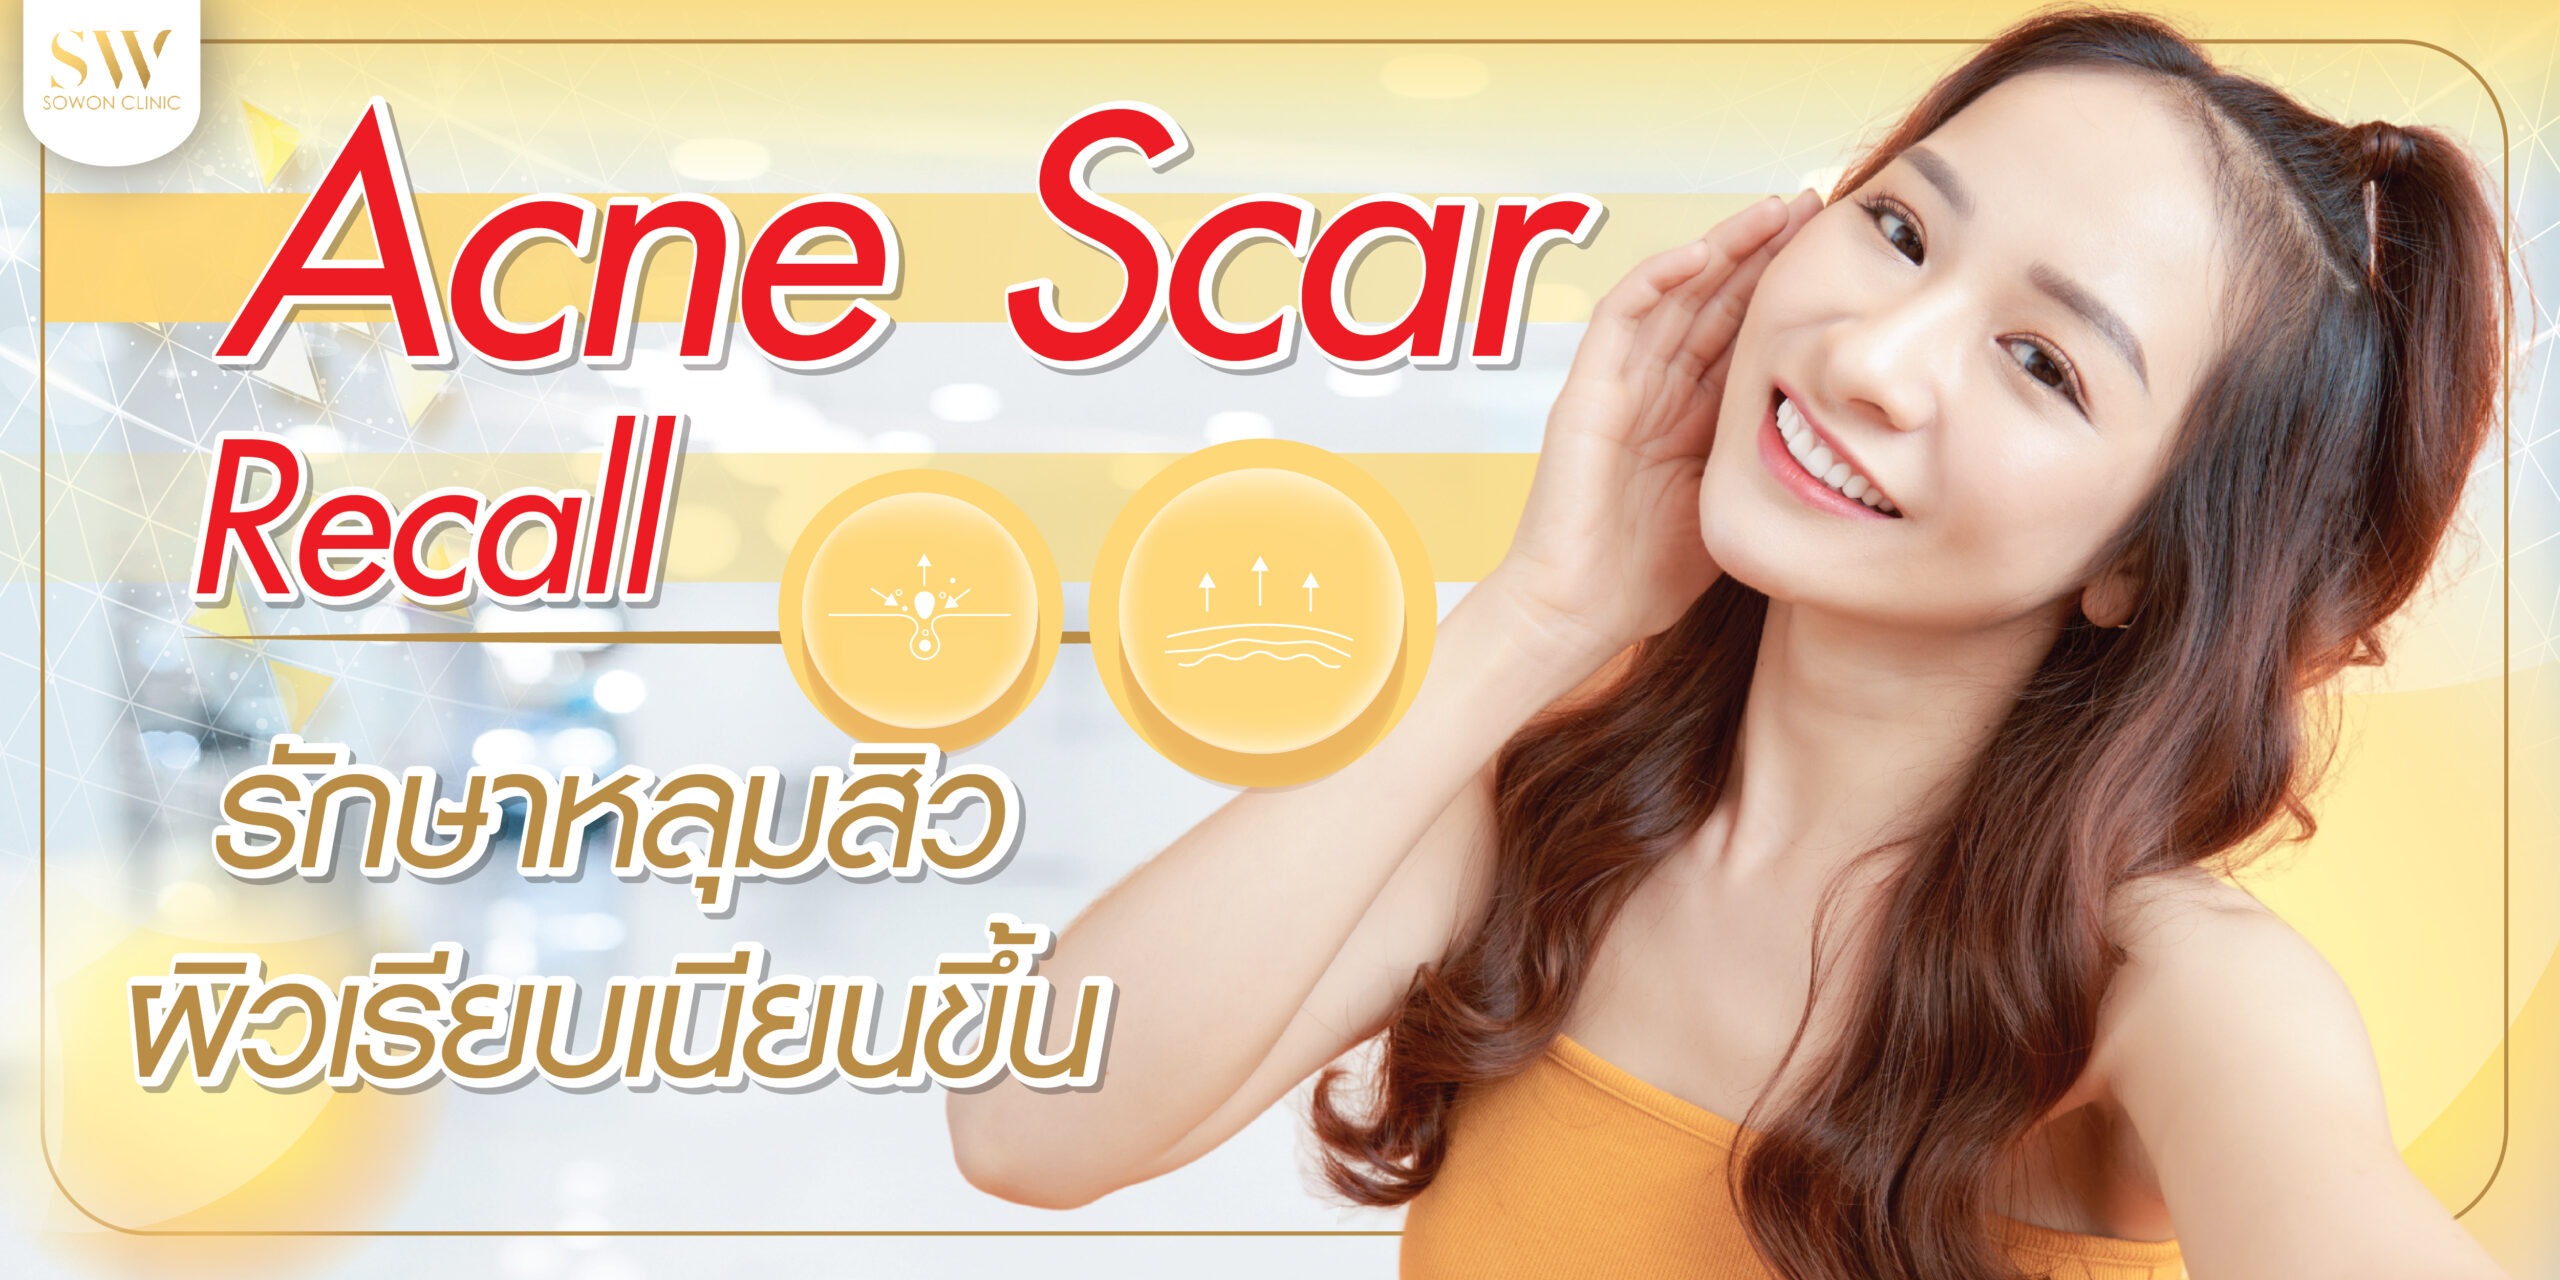 Acne scar recall